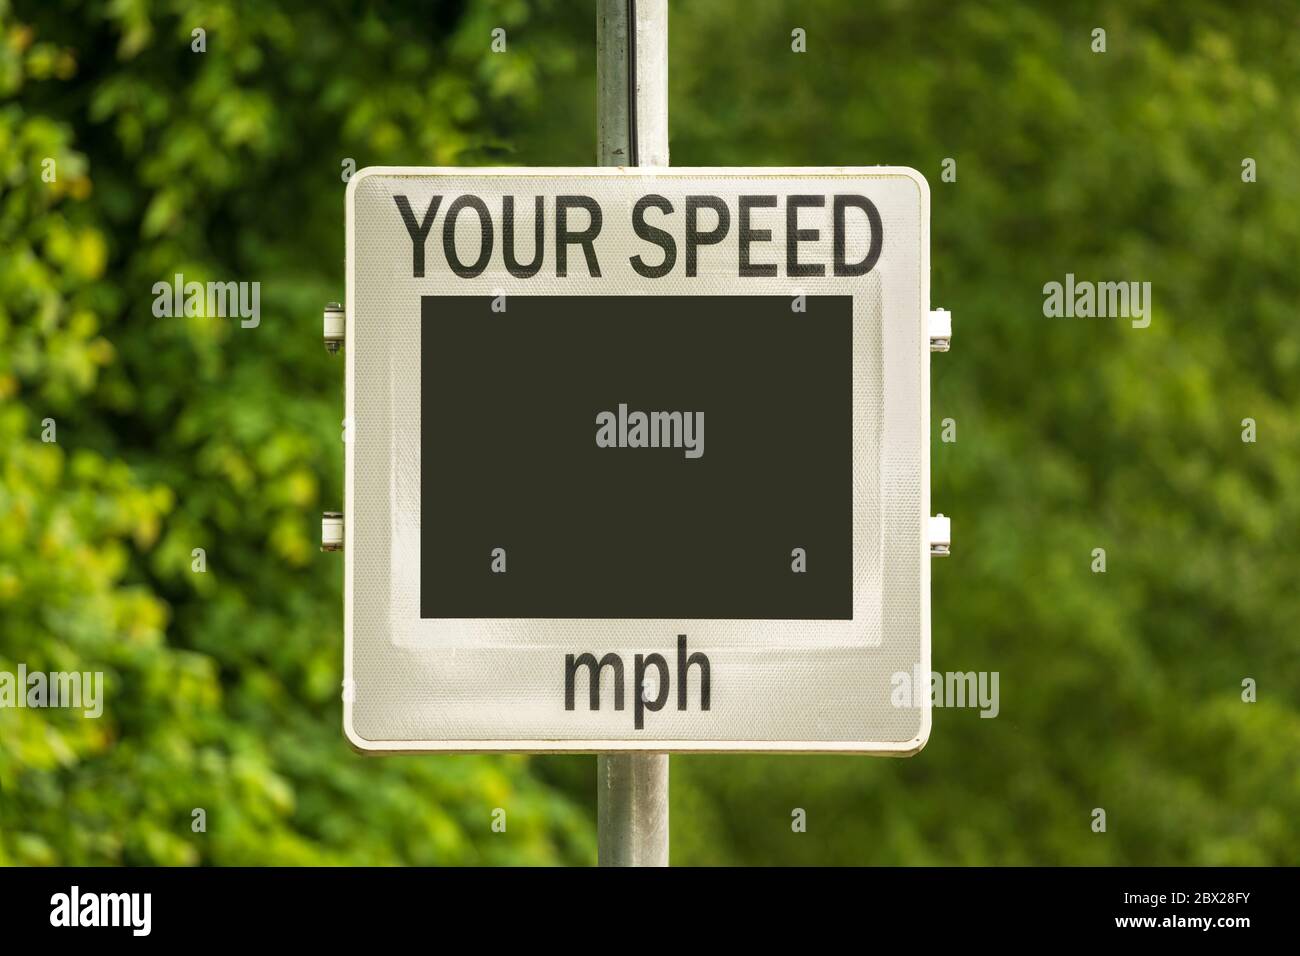 Geschwindigkeitsanzeigesgerät (SID), das die Geschwindigkeit der sich nähernden Autos misst und anzeigt. Leerer Bildschirm. GROSSBRITANNIEN. Andere Bildschirmvarianten in meinem Portfolio. Stockfoto